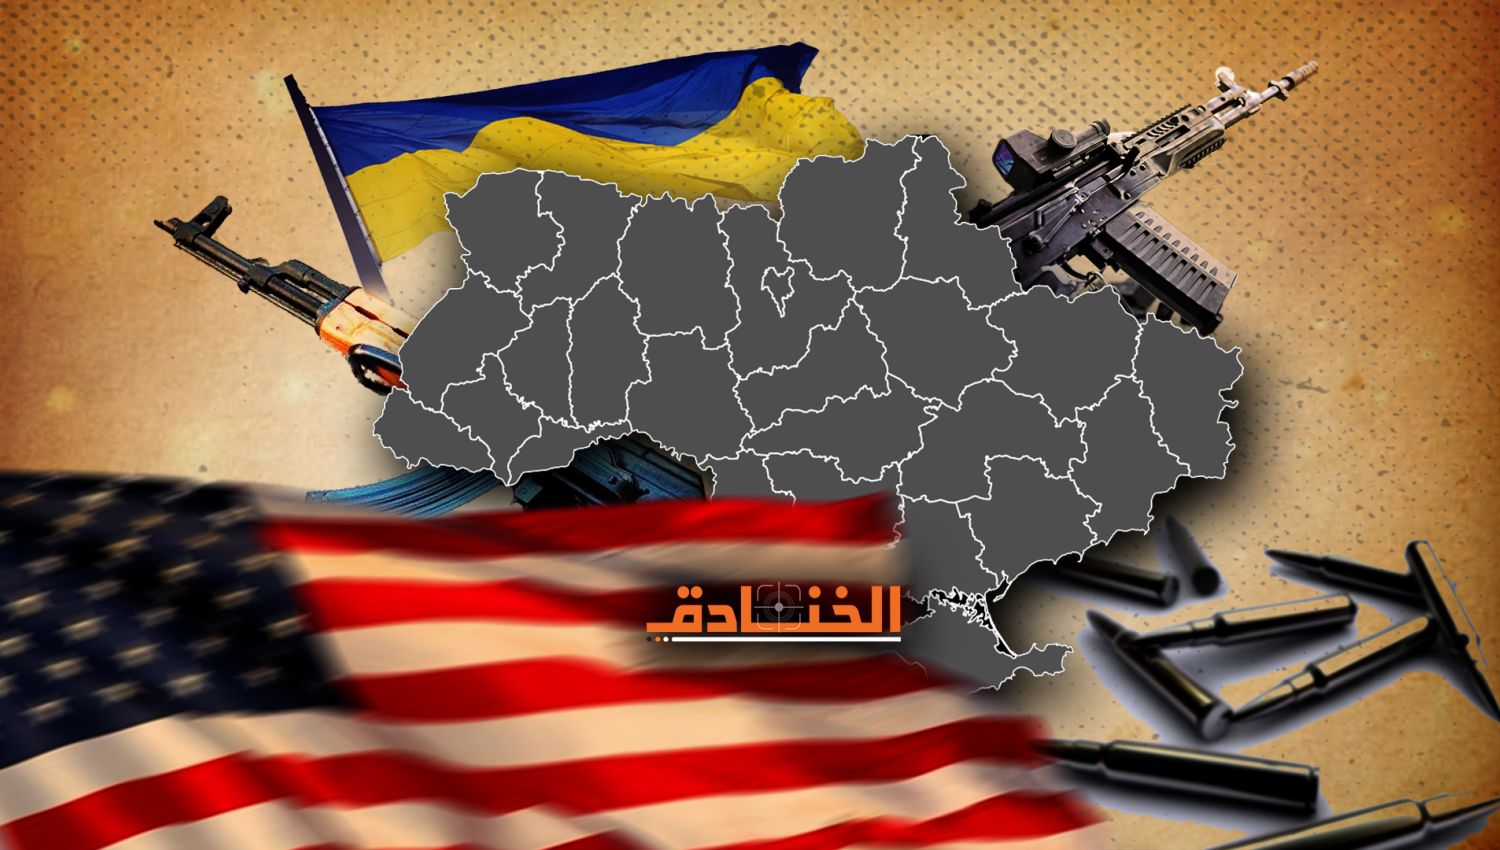 سوق الأسلحة يصل إلى 7 مليارات دولار :واشنطن لا تريد حلاً في أوكرانيا!